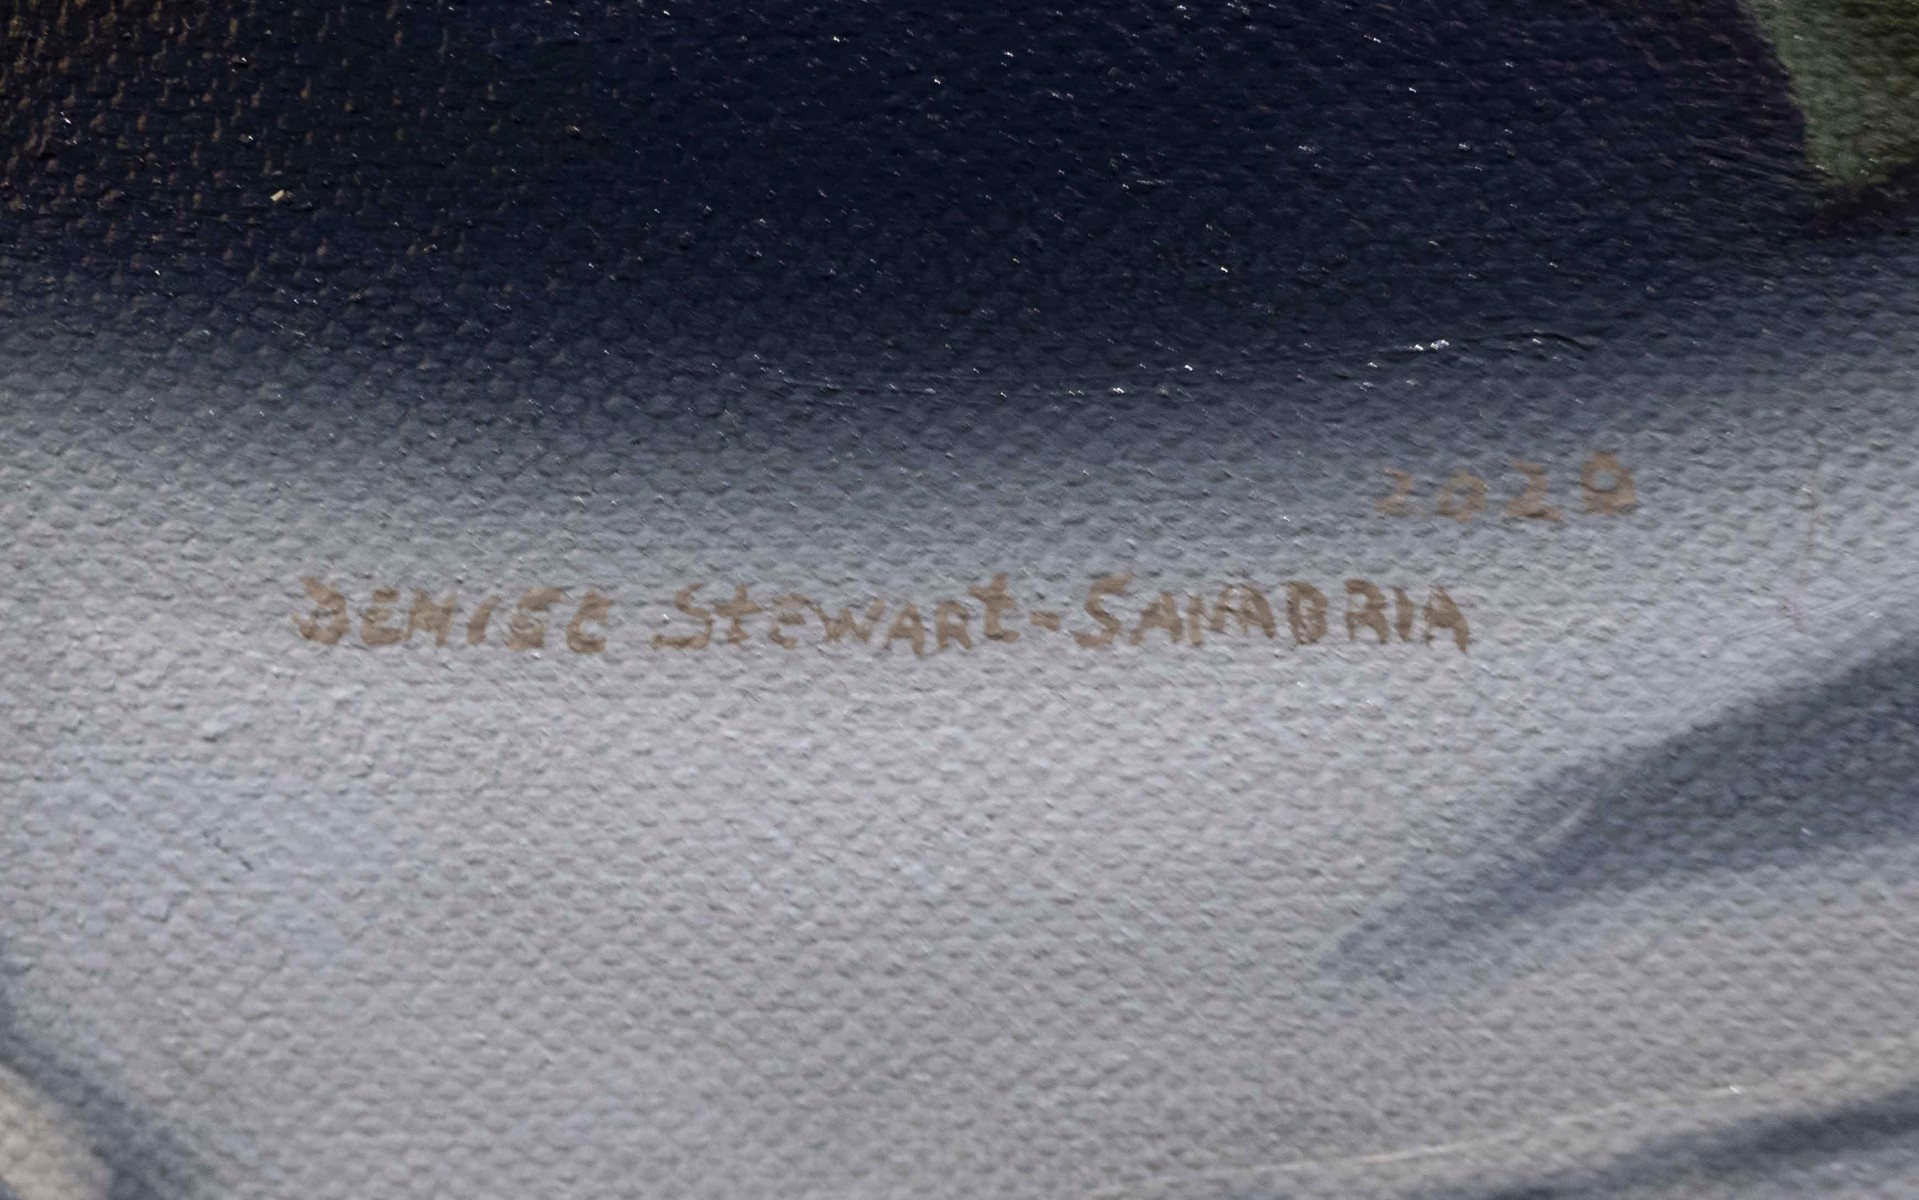 Aubergine Overhead by Denise Stewart-Sanabria